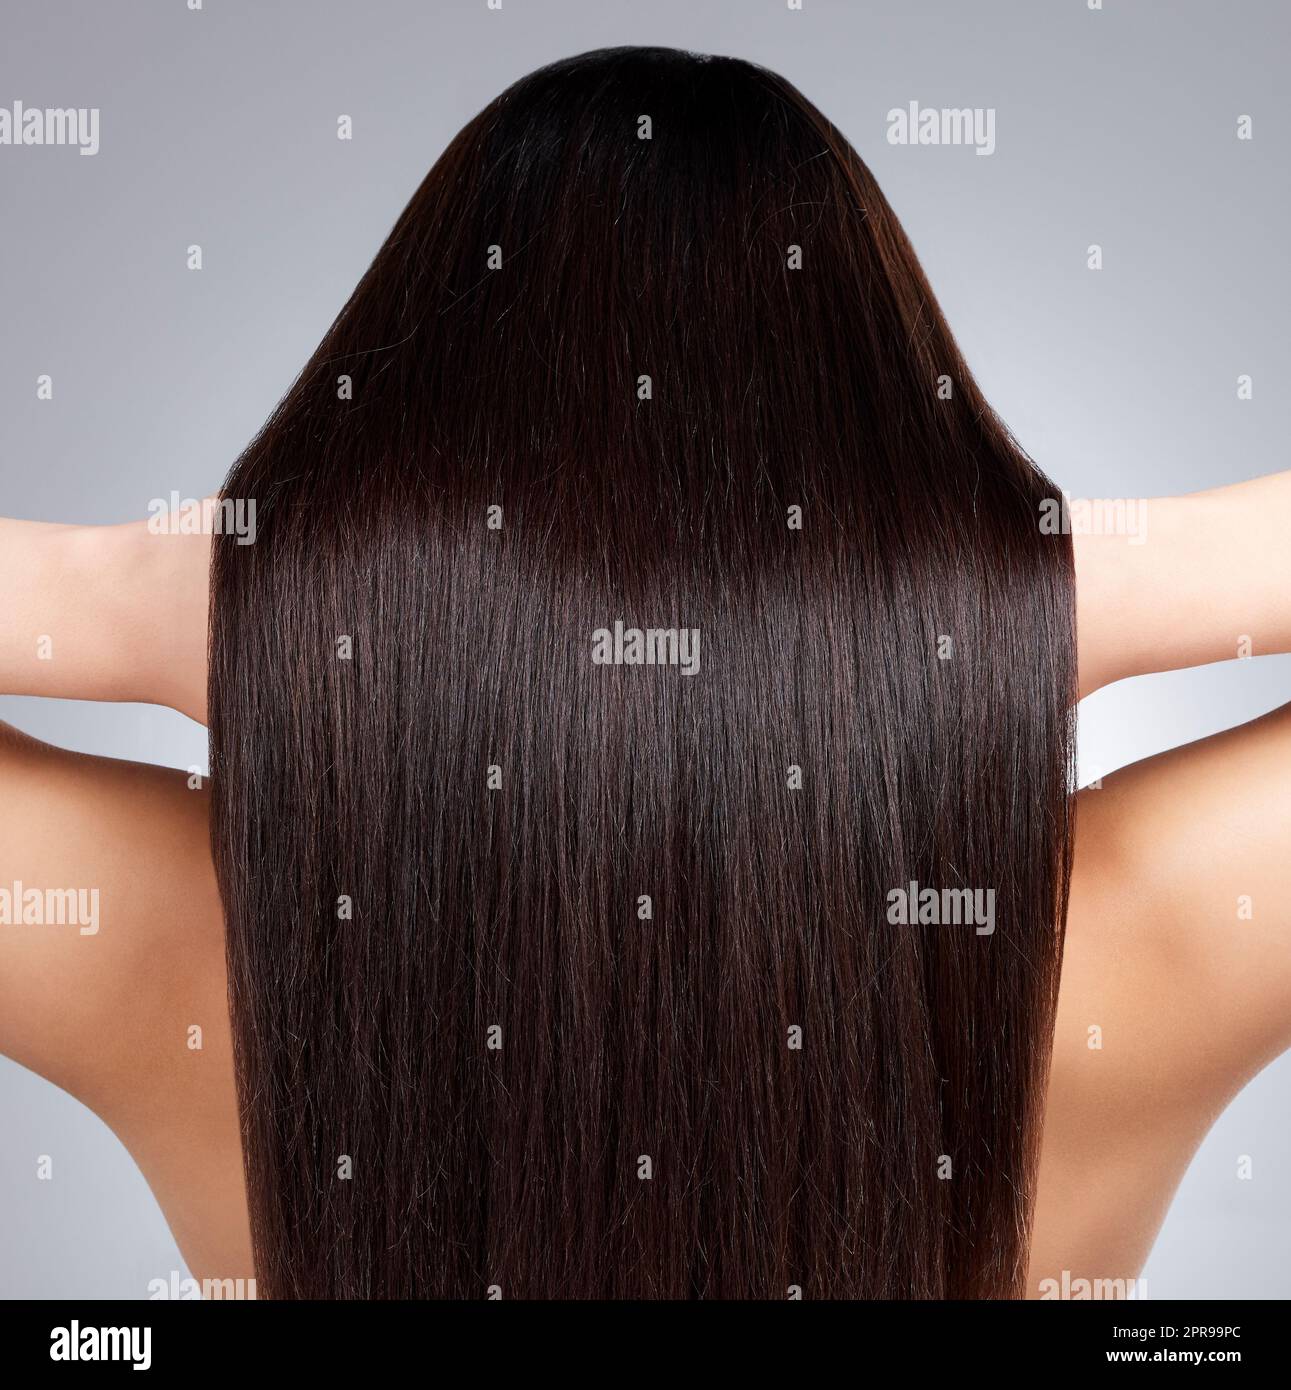 Schau dir diesen gesunden Glanz an. Rückansicht einer jungen Frau mit langen seidigen Haaren, die vor einem grauen Hintergrund posiert. Stockfoto